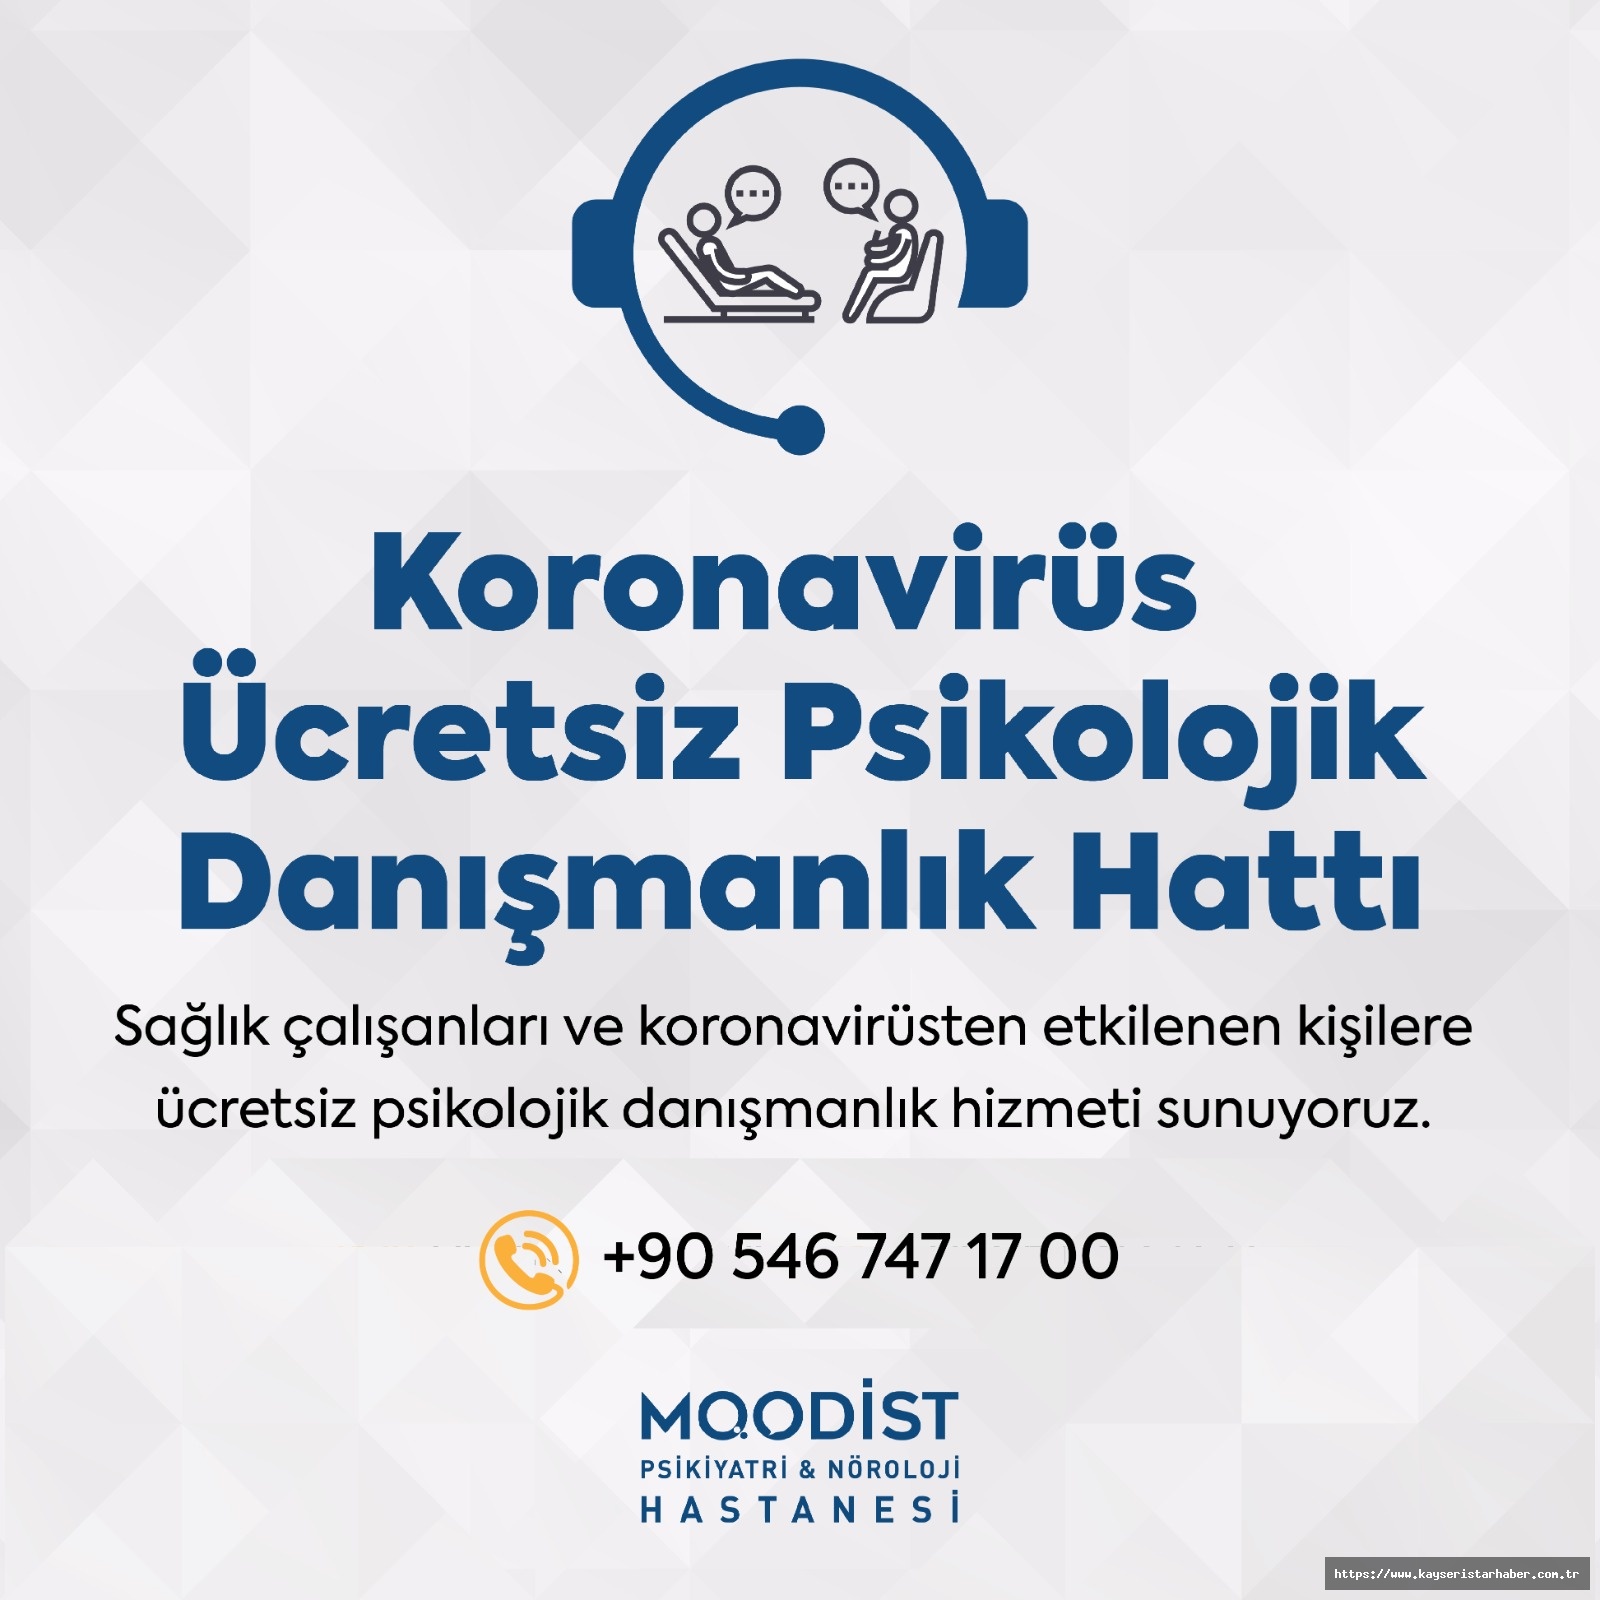 Moodist'ten Koronavirüs Ücretsiz Psikolojik Danışmanlık Hattı